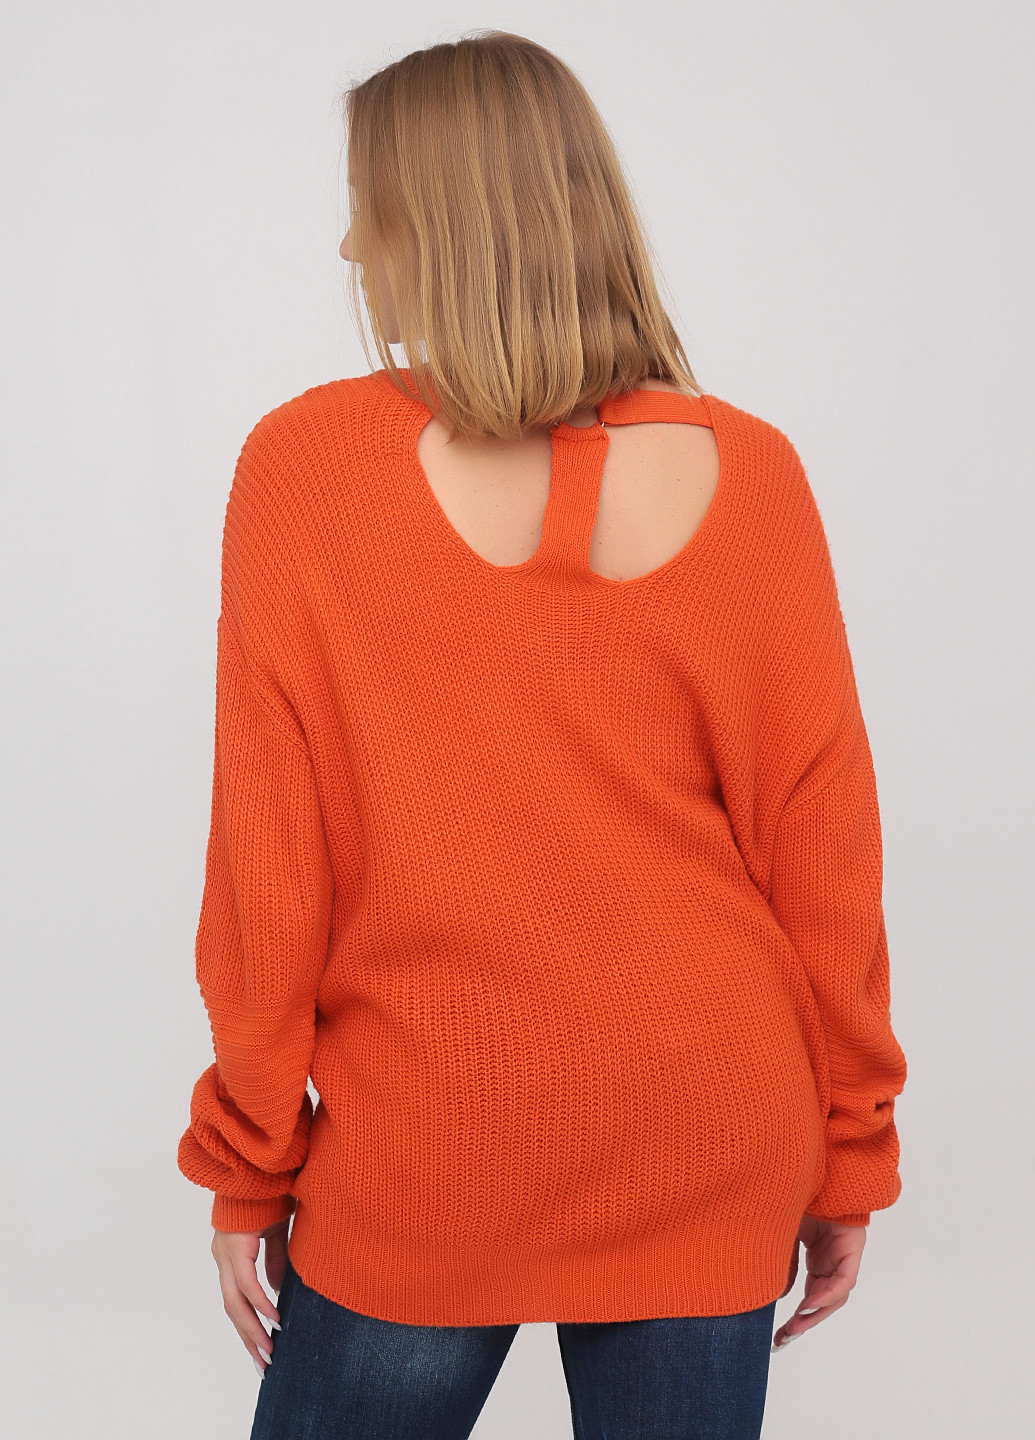 Оранжевый демисезонный пуловер пуловер Dilvin